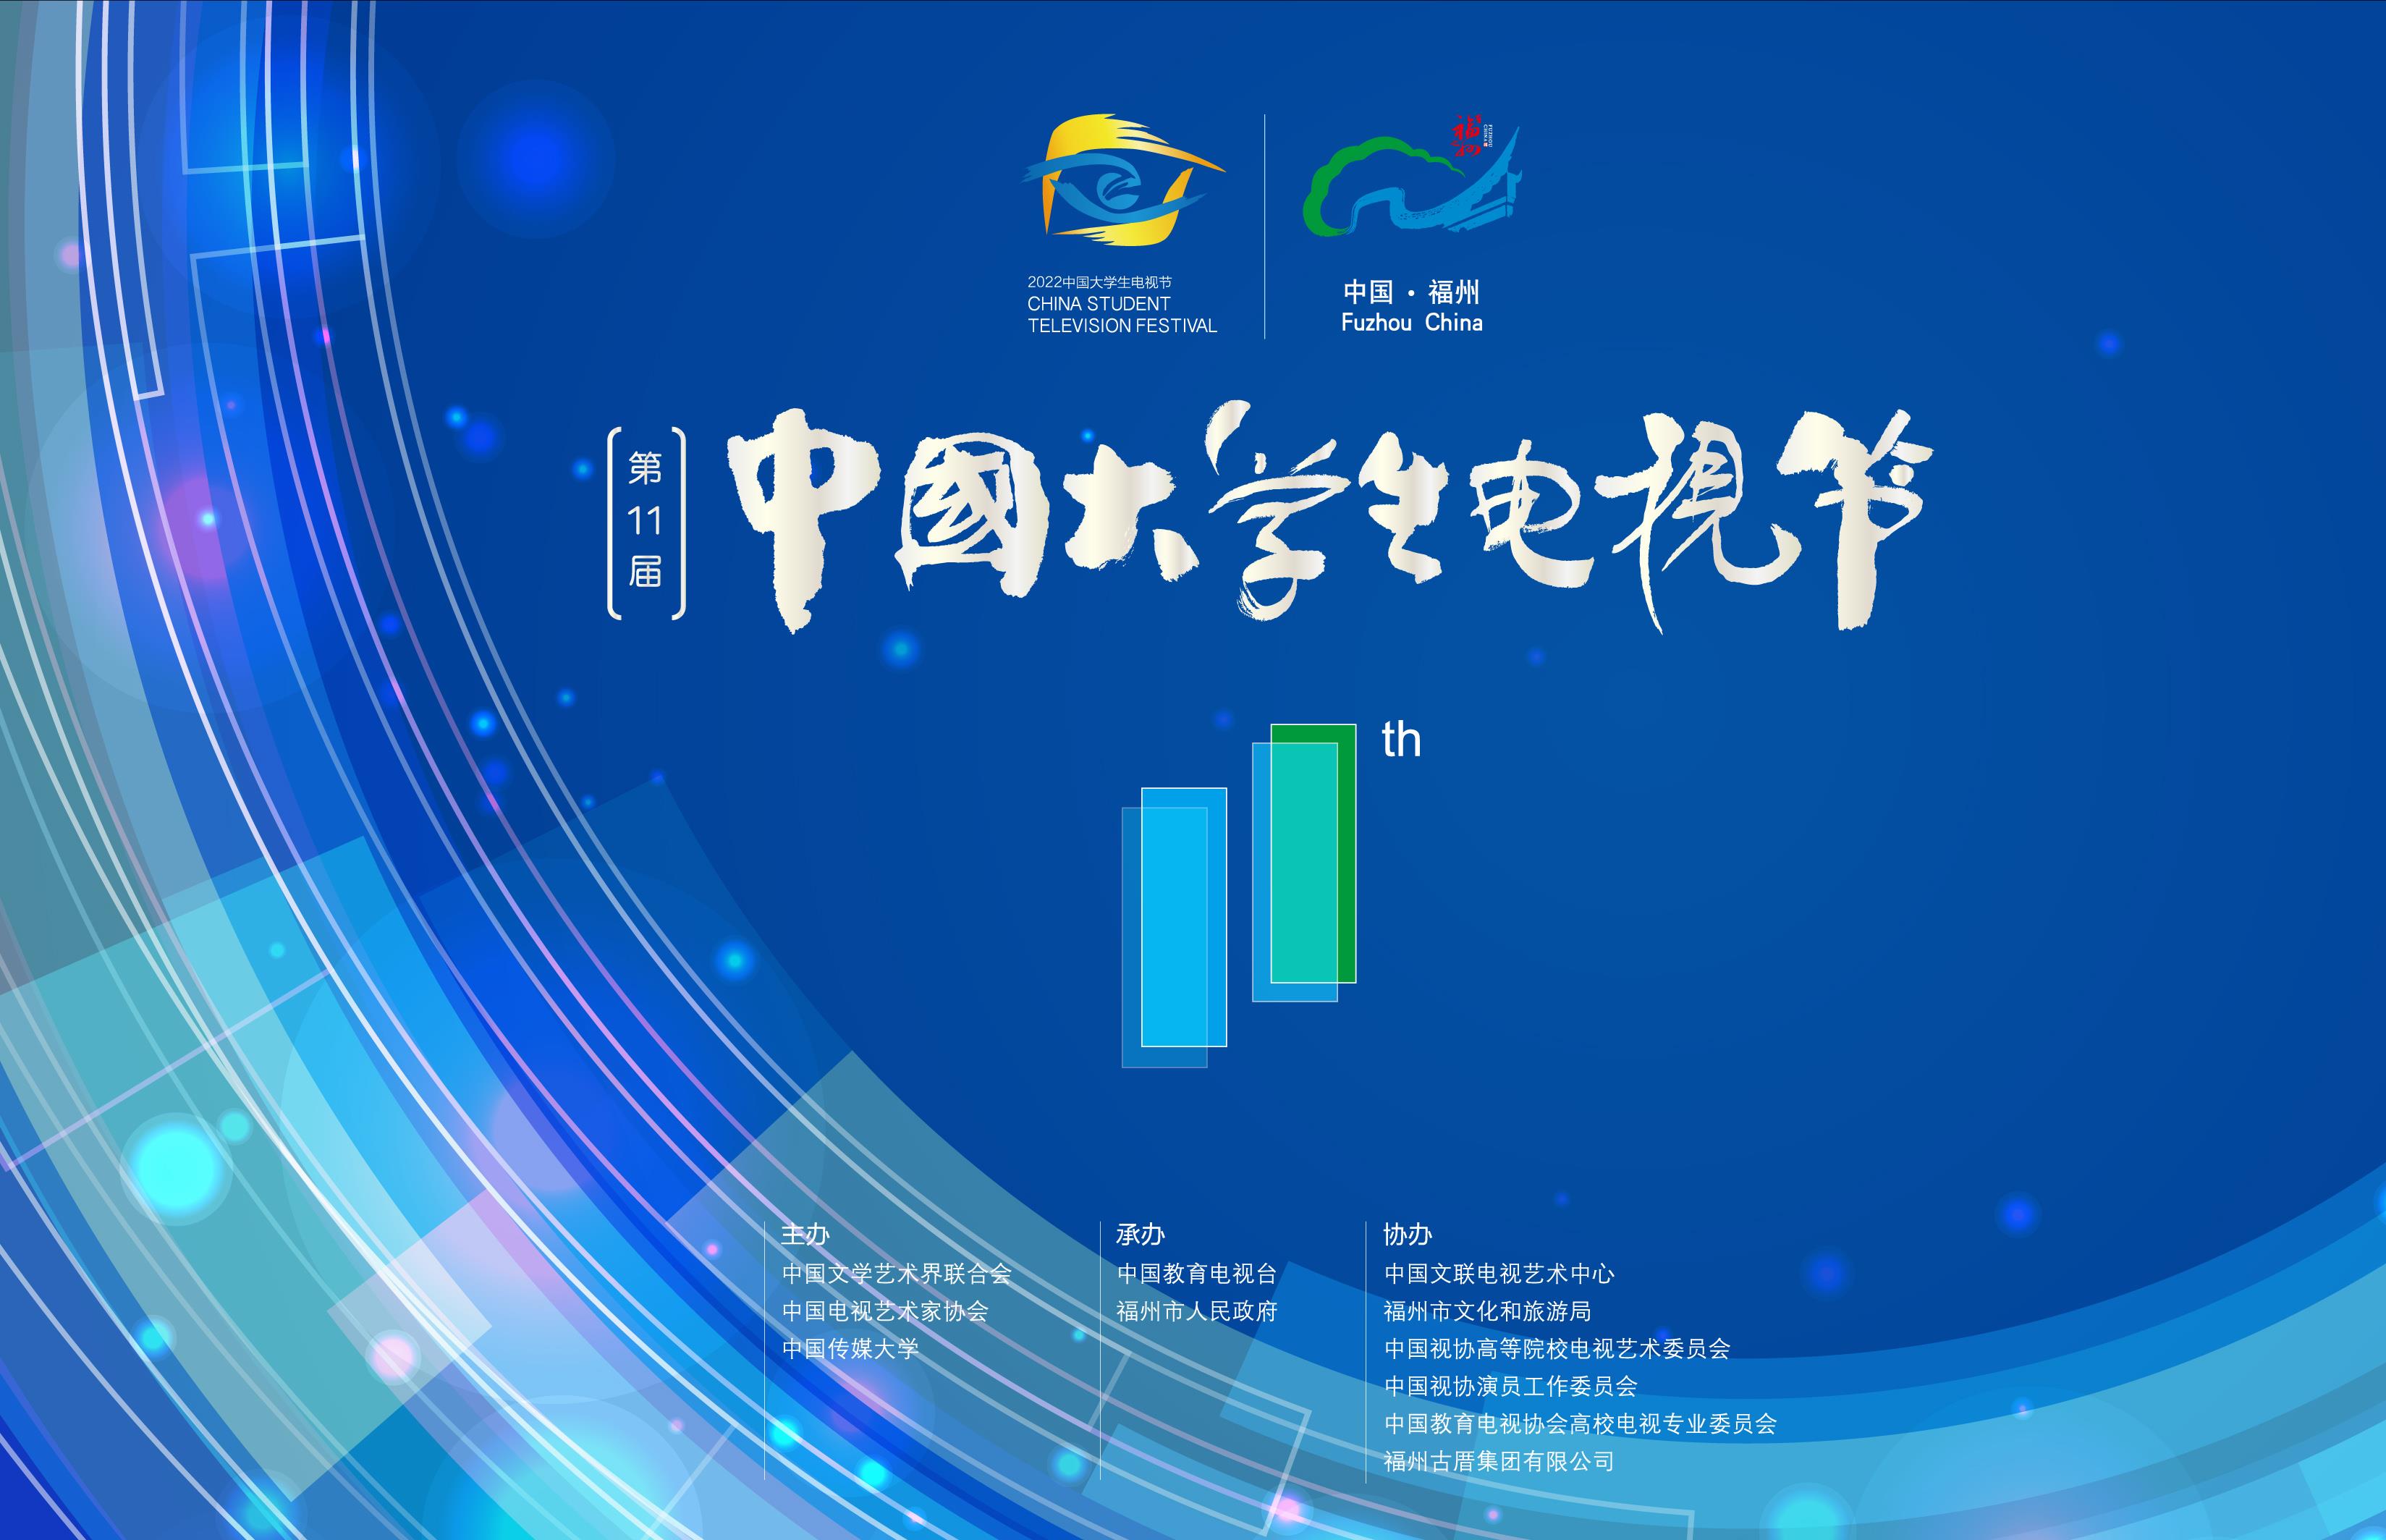 第十一届中国大学生电视节今日启动